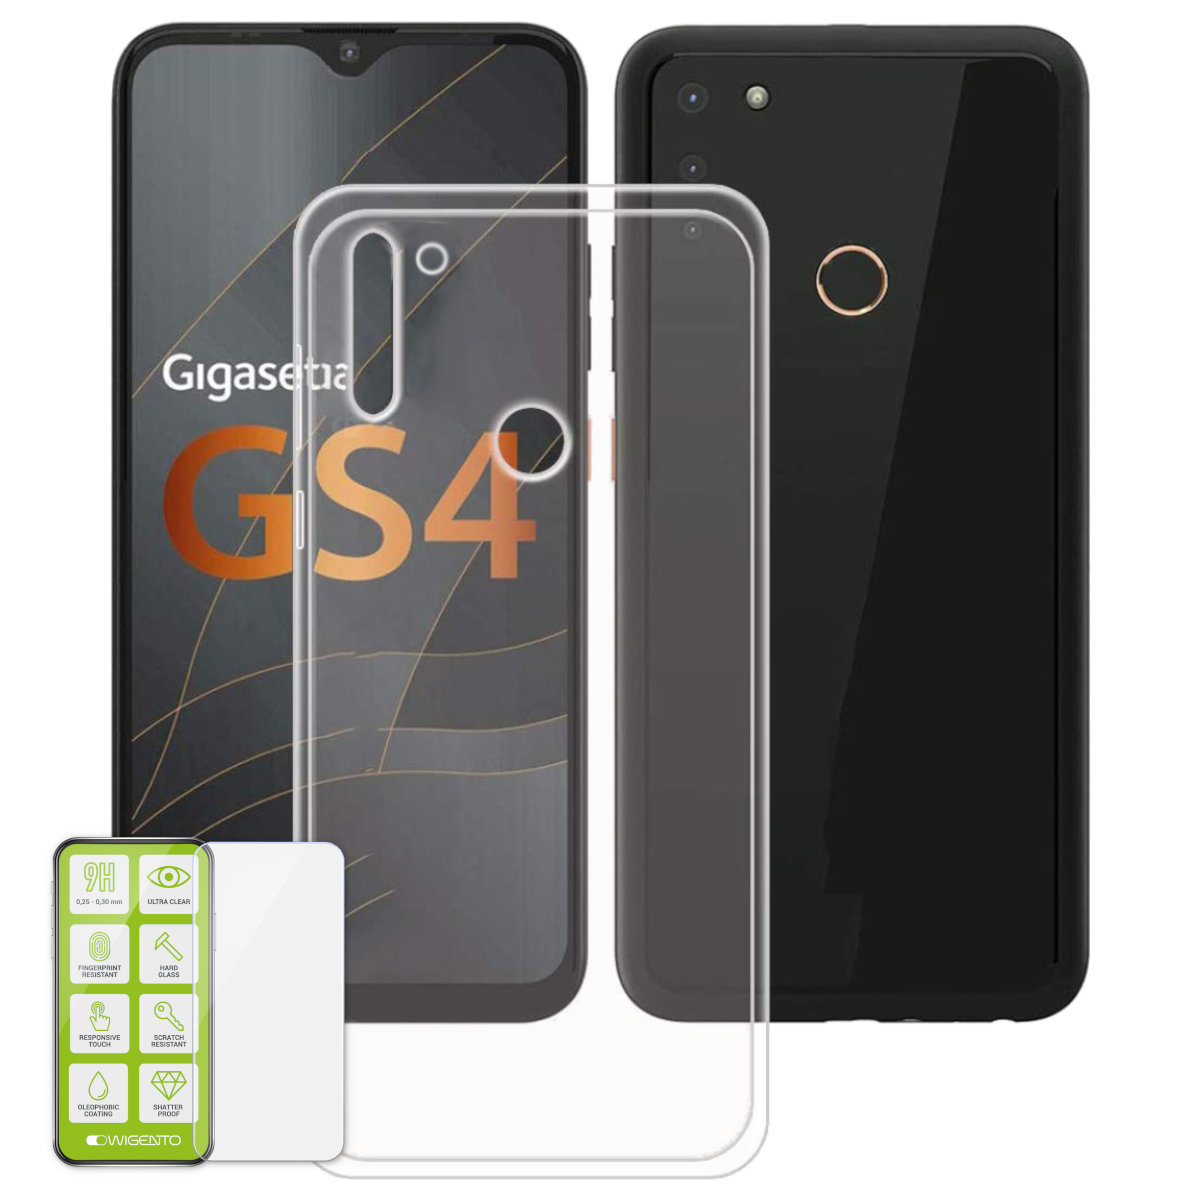 Glas GS4, Silikon + Backcover, Hülle WIGENTO Hart Transparent Produktset Folie, Gigaset,